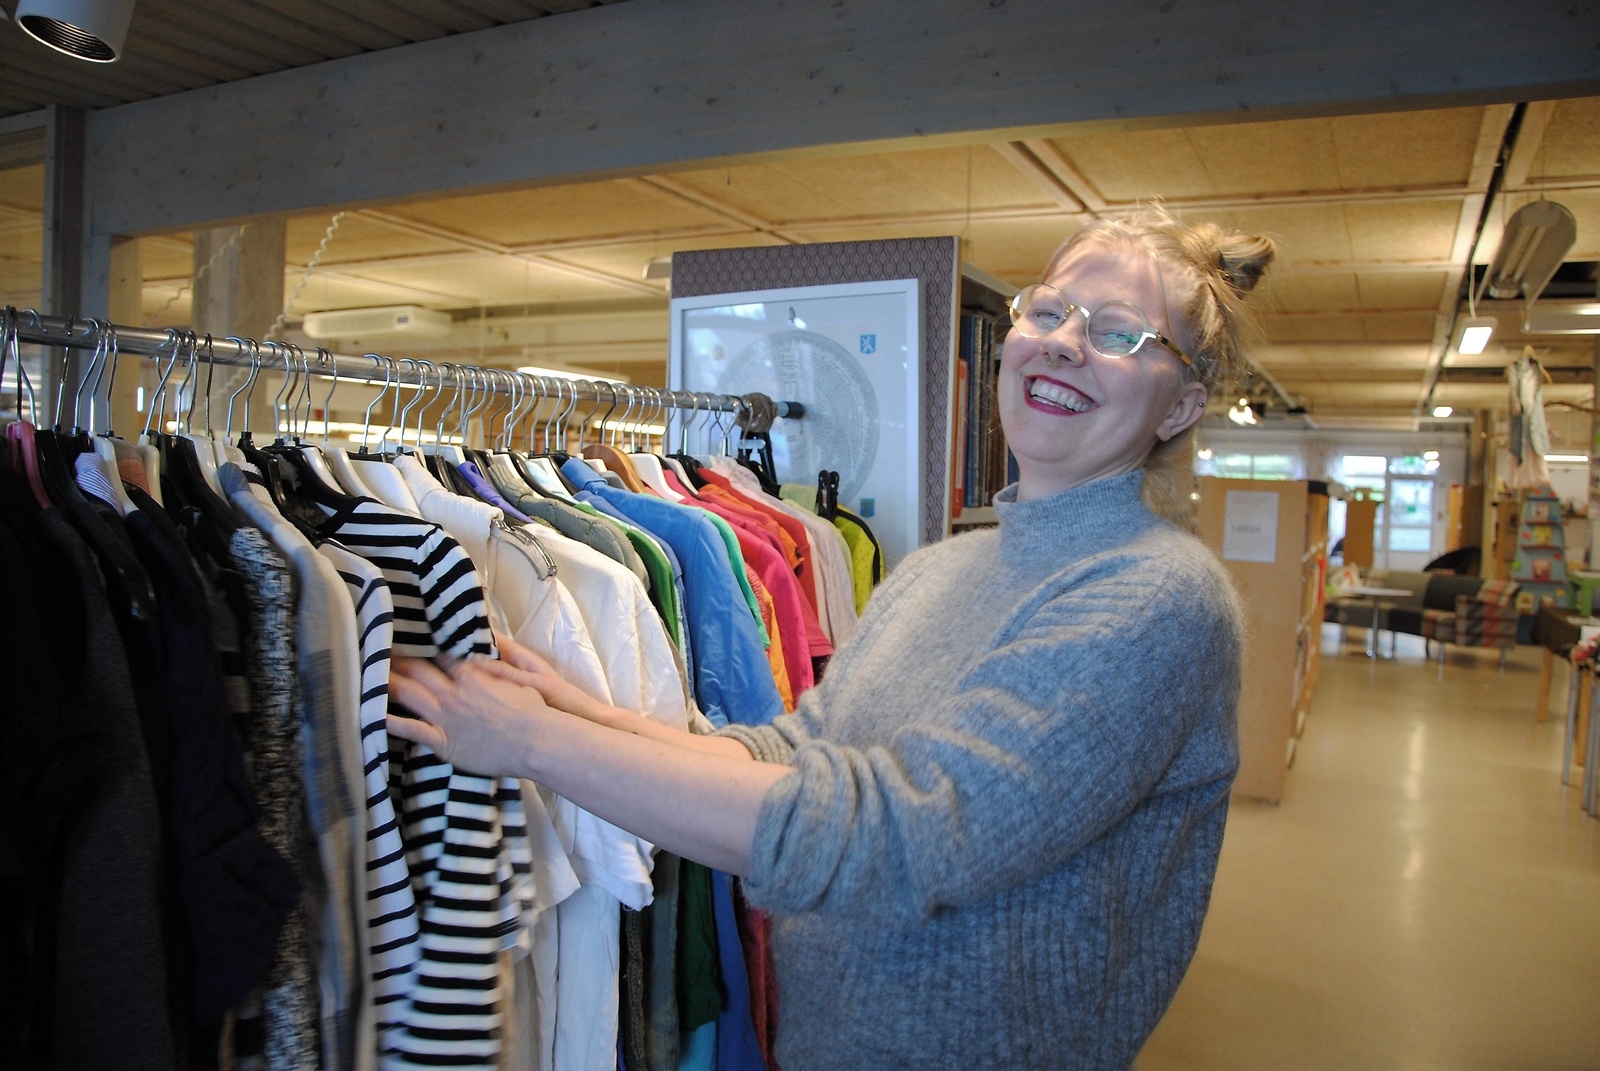 Anna Johansson, ABF, en av initiativtagarna till ”Omställningsgruppen Osby”, var med på klädbytardagen i biblioteket. Foto: Maja Ögren Andersson